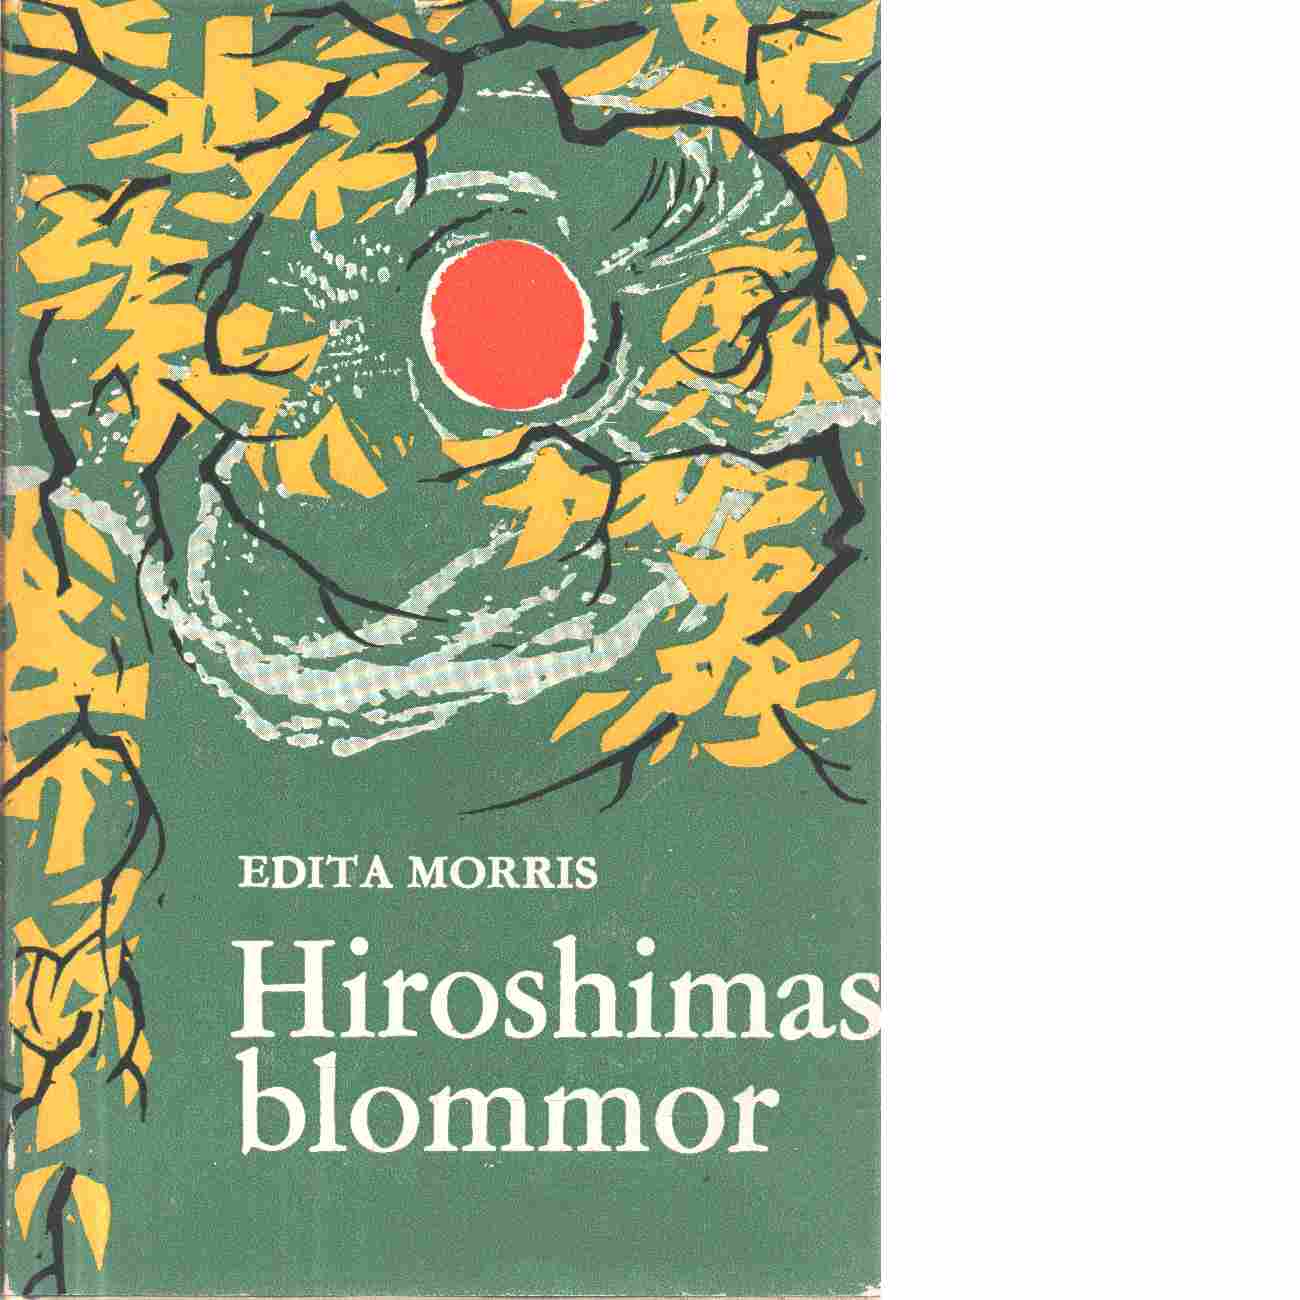 Hiroshimas blommor - Morris, Edita